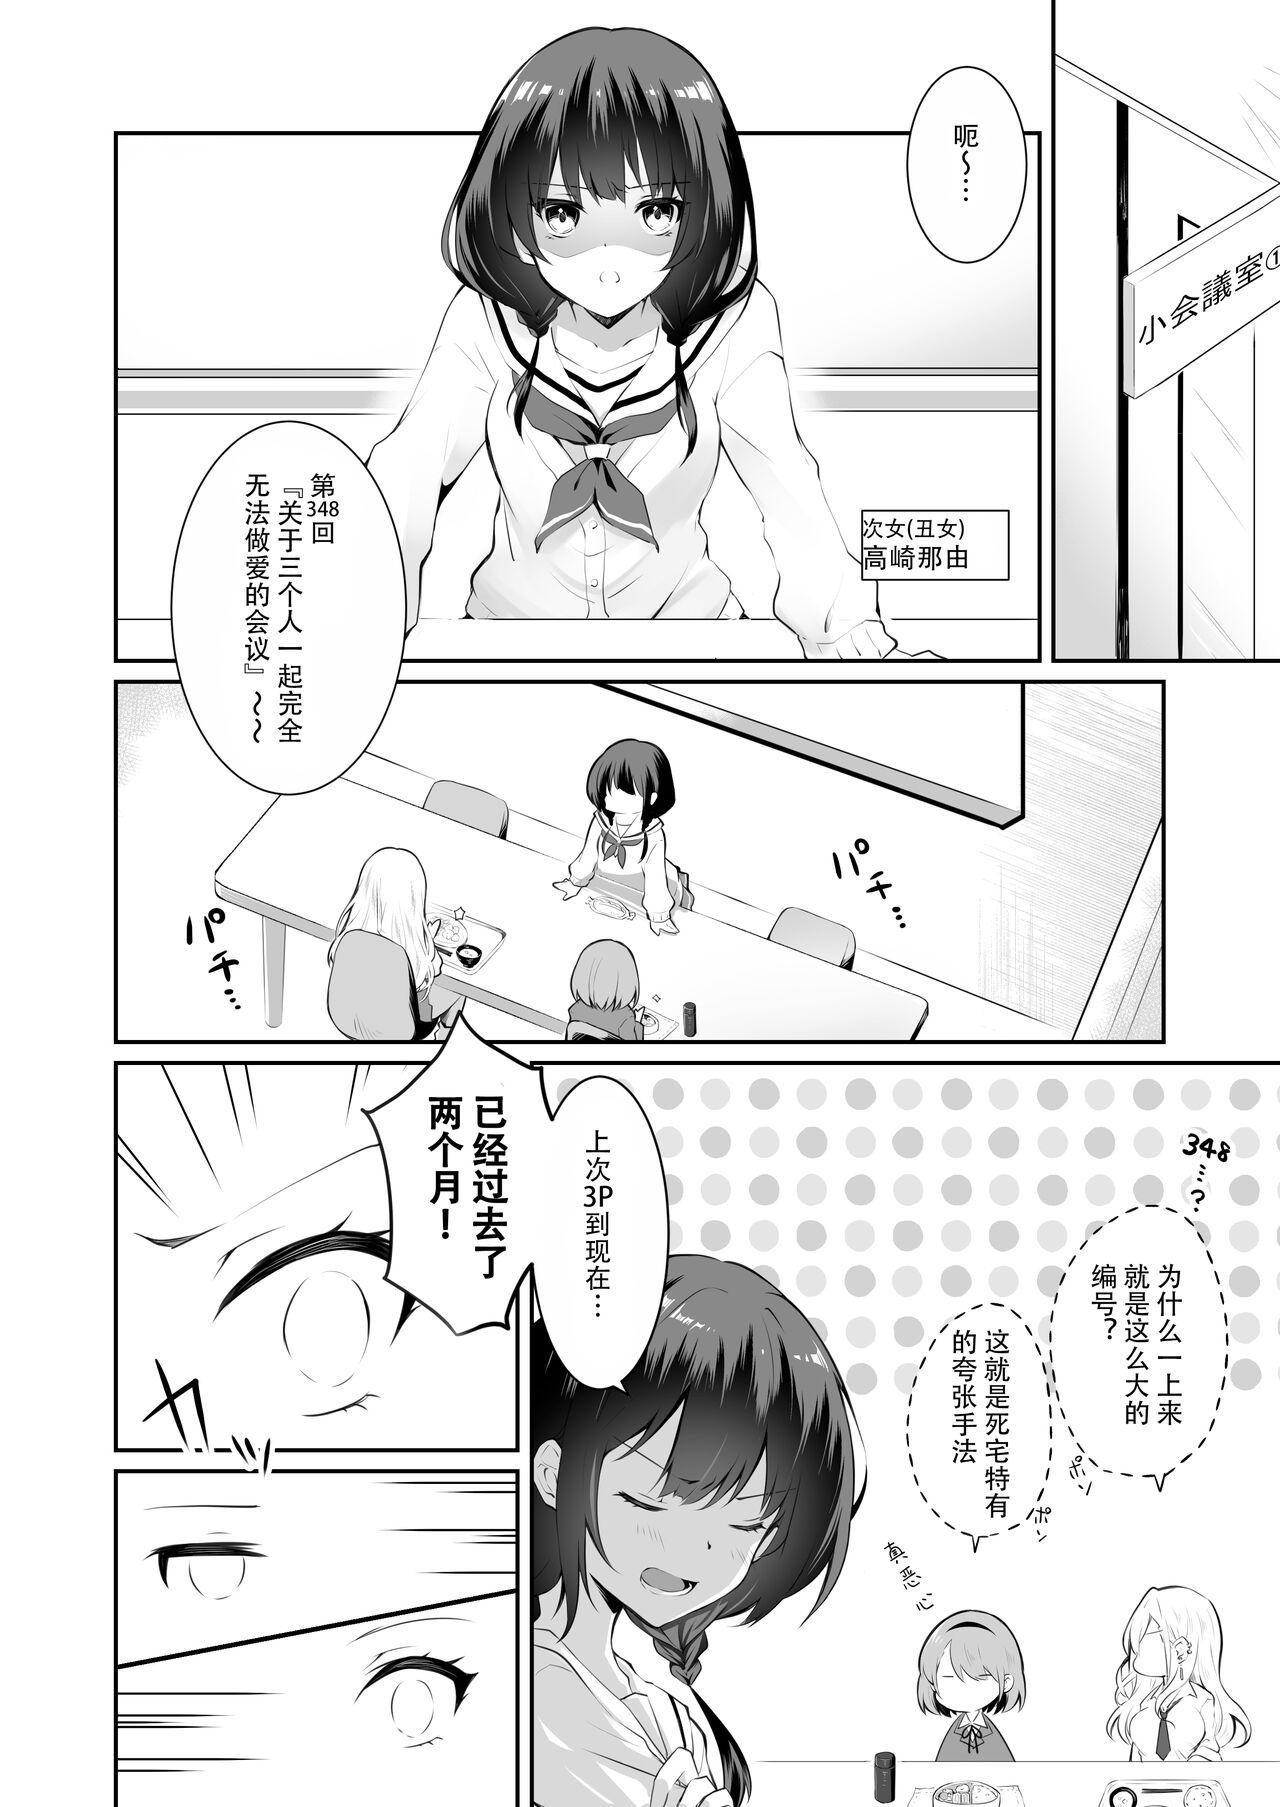 Nurumassage 家庭内売春2 NICOLAI - Original Uncut - Page 5